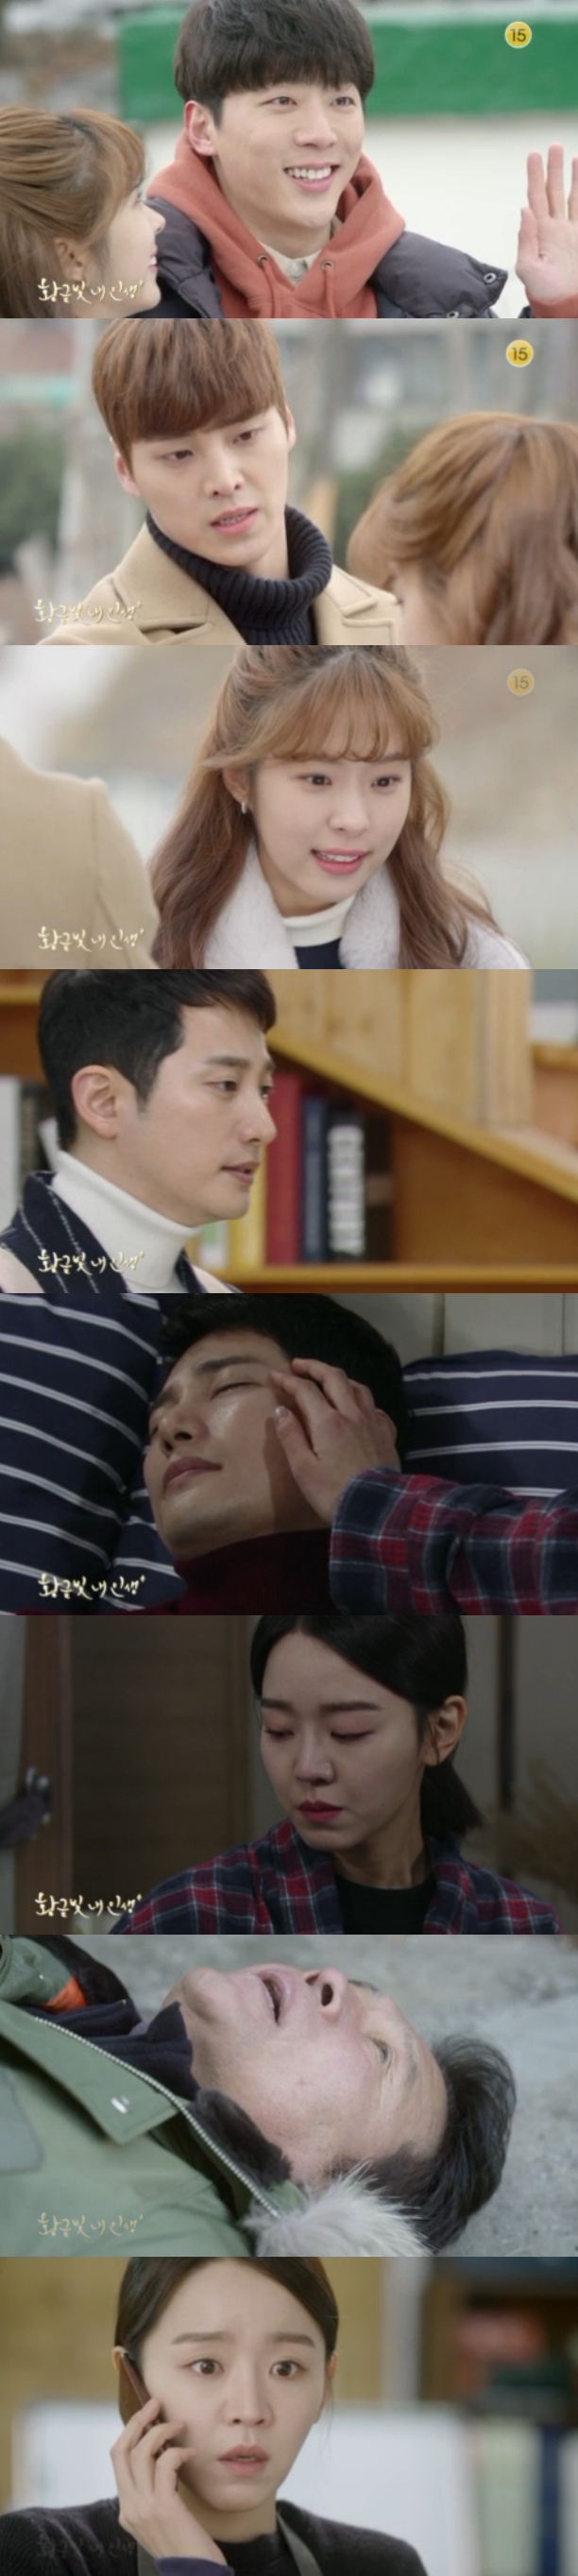 14일 오후 방송되는 KBS2 주말드라마 '황금빛 내인생' 38회에서는 지안(신혜선)이 부친  서태수(천호진)가 쓰러졌다는 전화를 받고 충격을 받는 극적 반전이 그려진다. 사진=KBS 영상 캡처